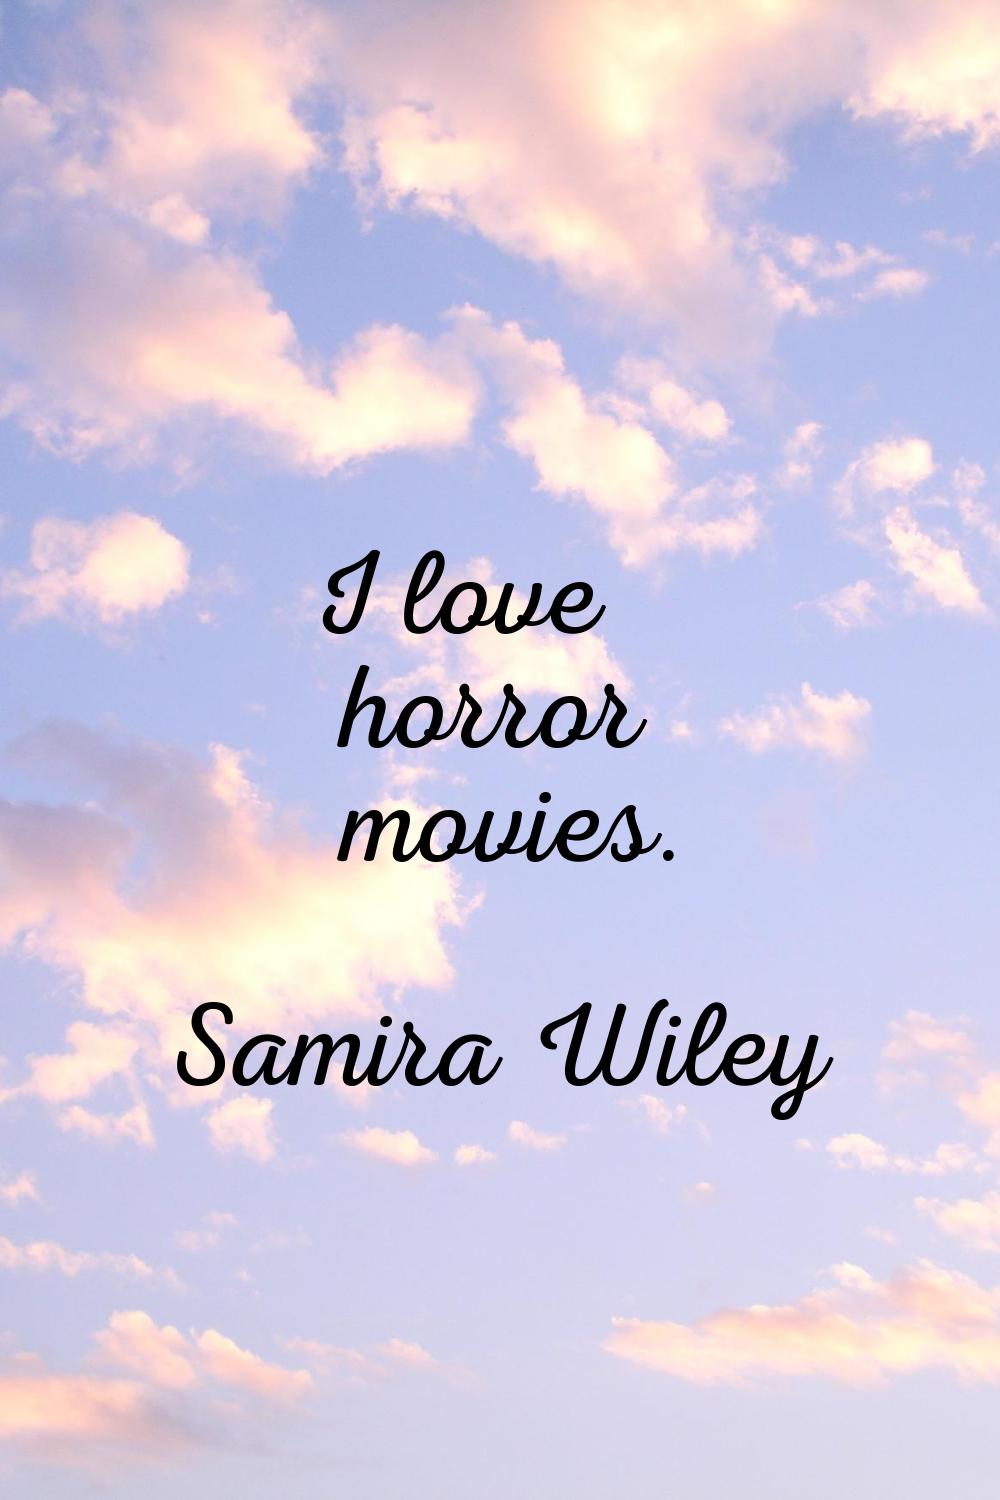 I love horror movies.